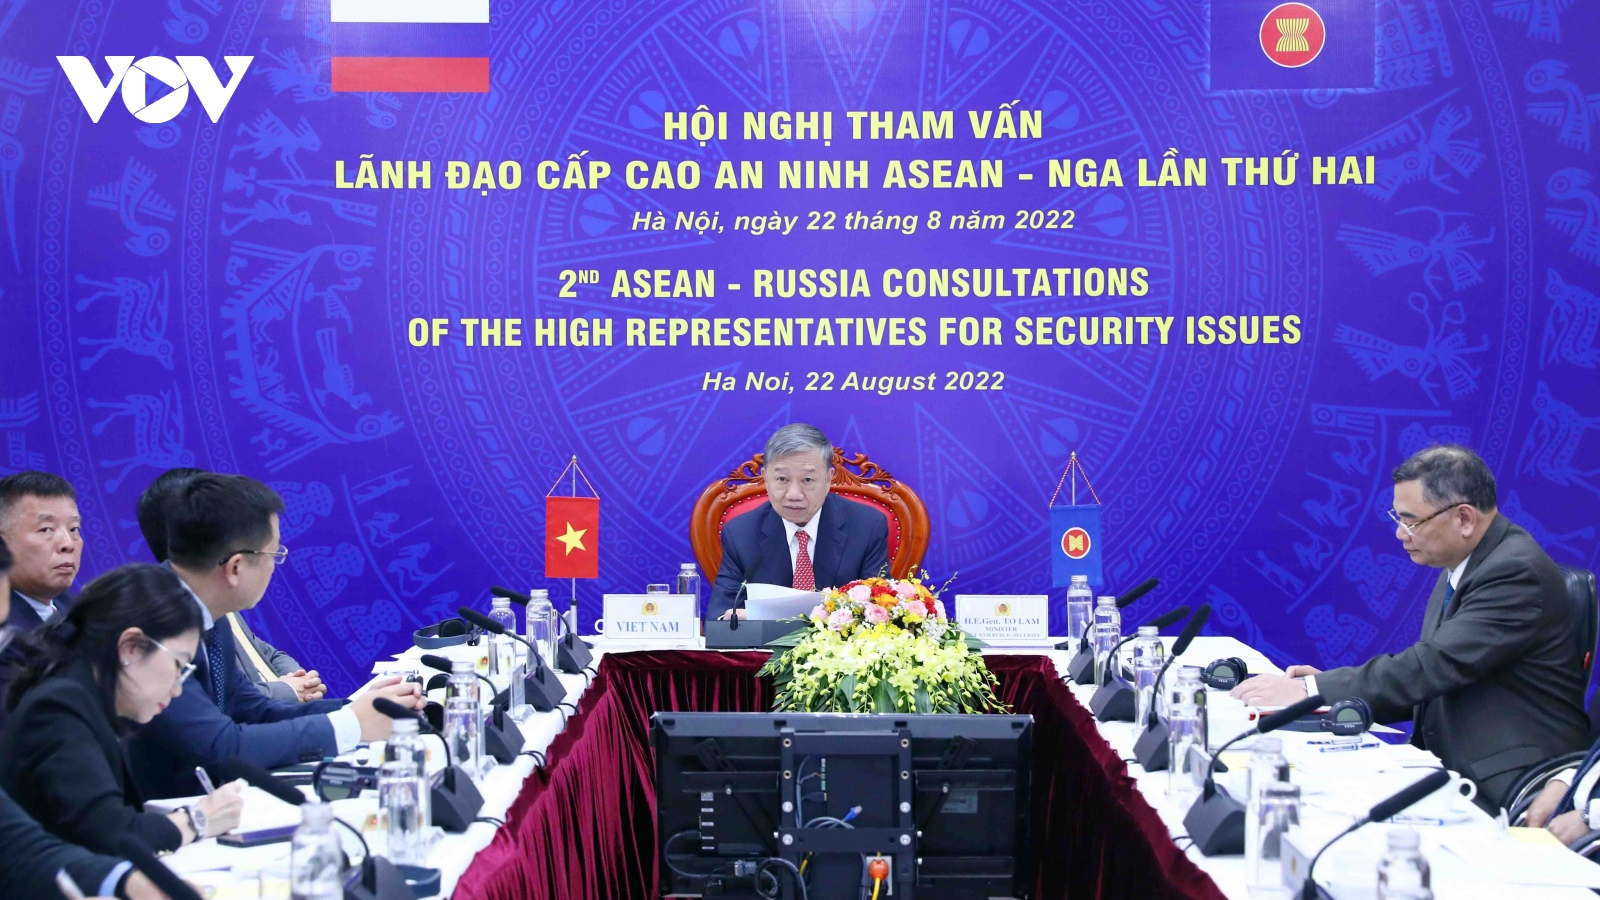 Bộ trưởng Tô Lâm dự Hội nghị tham vấn lãnh đạo cấp cao an ninh ASEAN - Nga